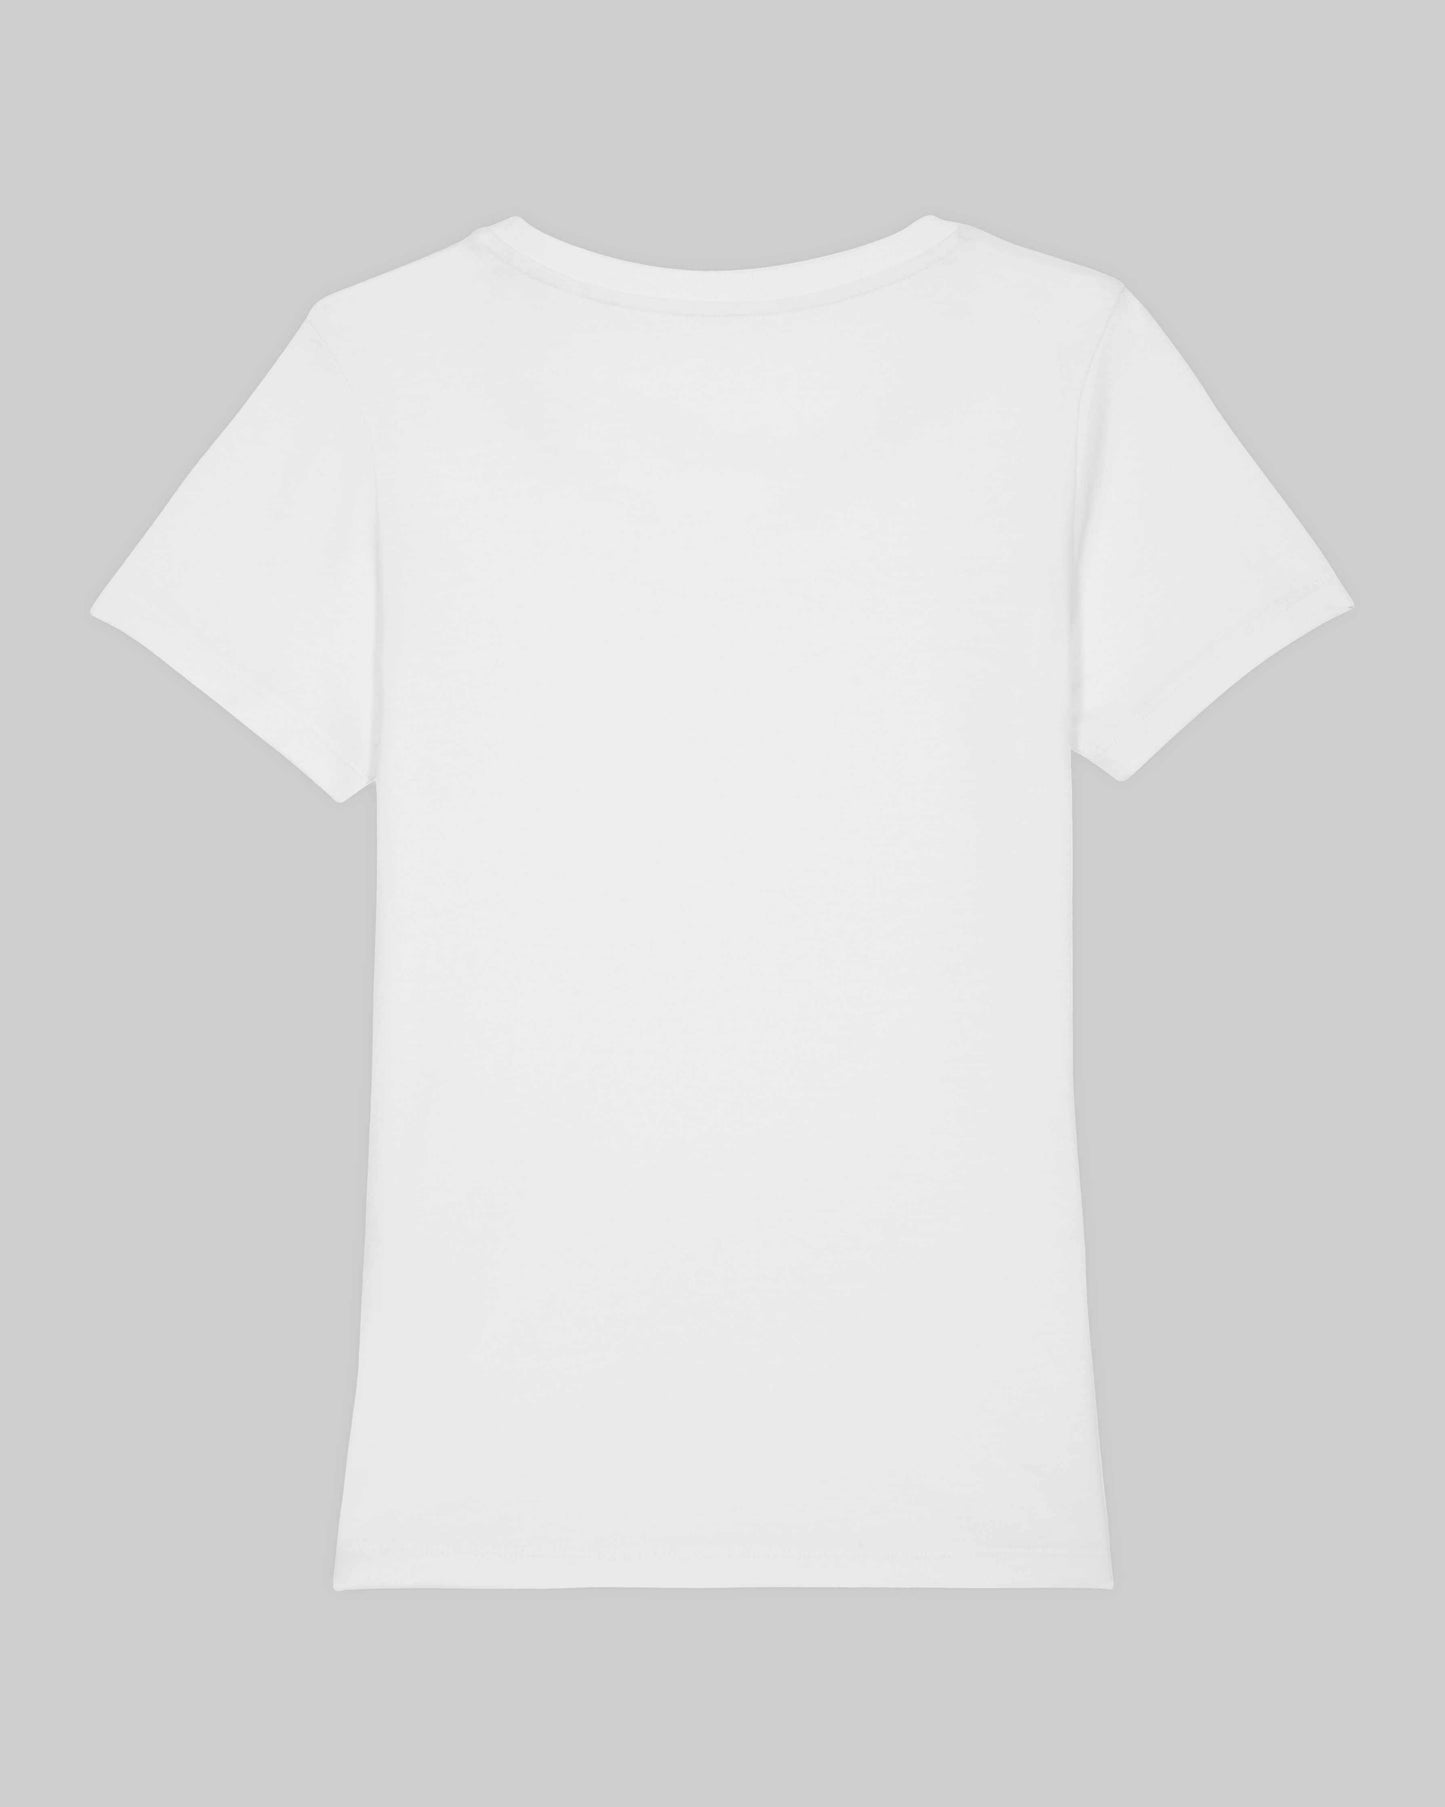 EINHORST® Organic Shirt tailliert in "Weiß" mit dem Motiv "s-ally Regenbogen" in der Kombination schwarzer Regenbogen mit bunter Schrift, Bild von Shirt von hinten